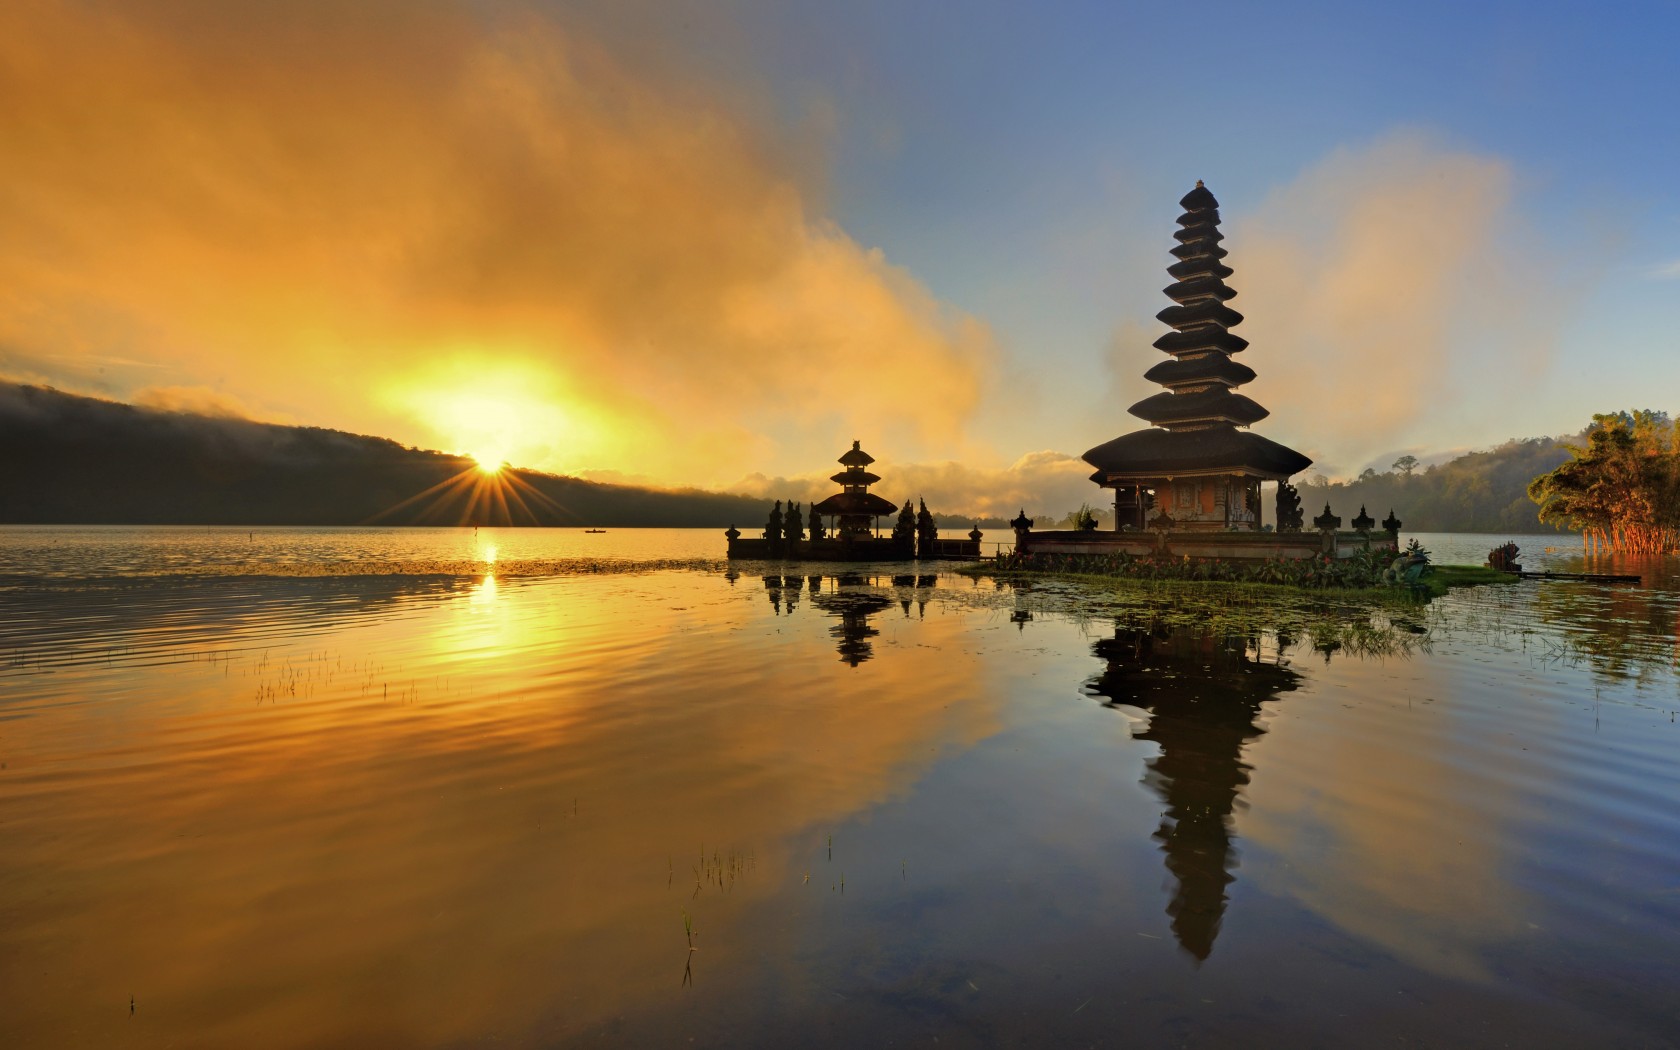 تور اندونزی با پرواز مستقیم و اقامت 7 روزه در بهترین هتل های کشور اندونزی